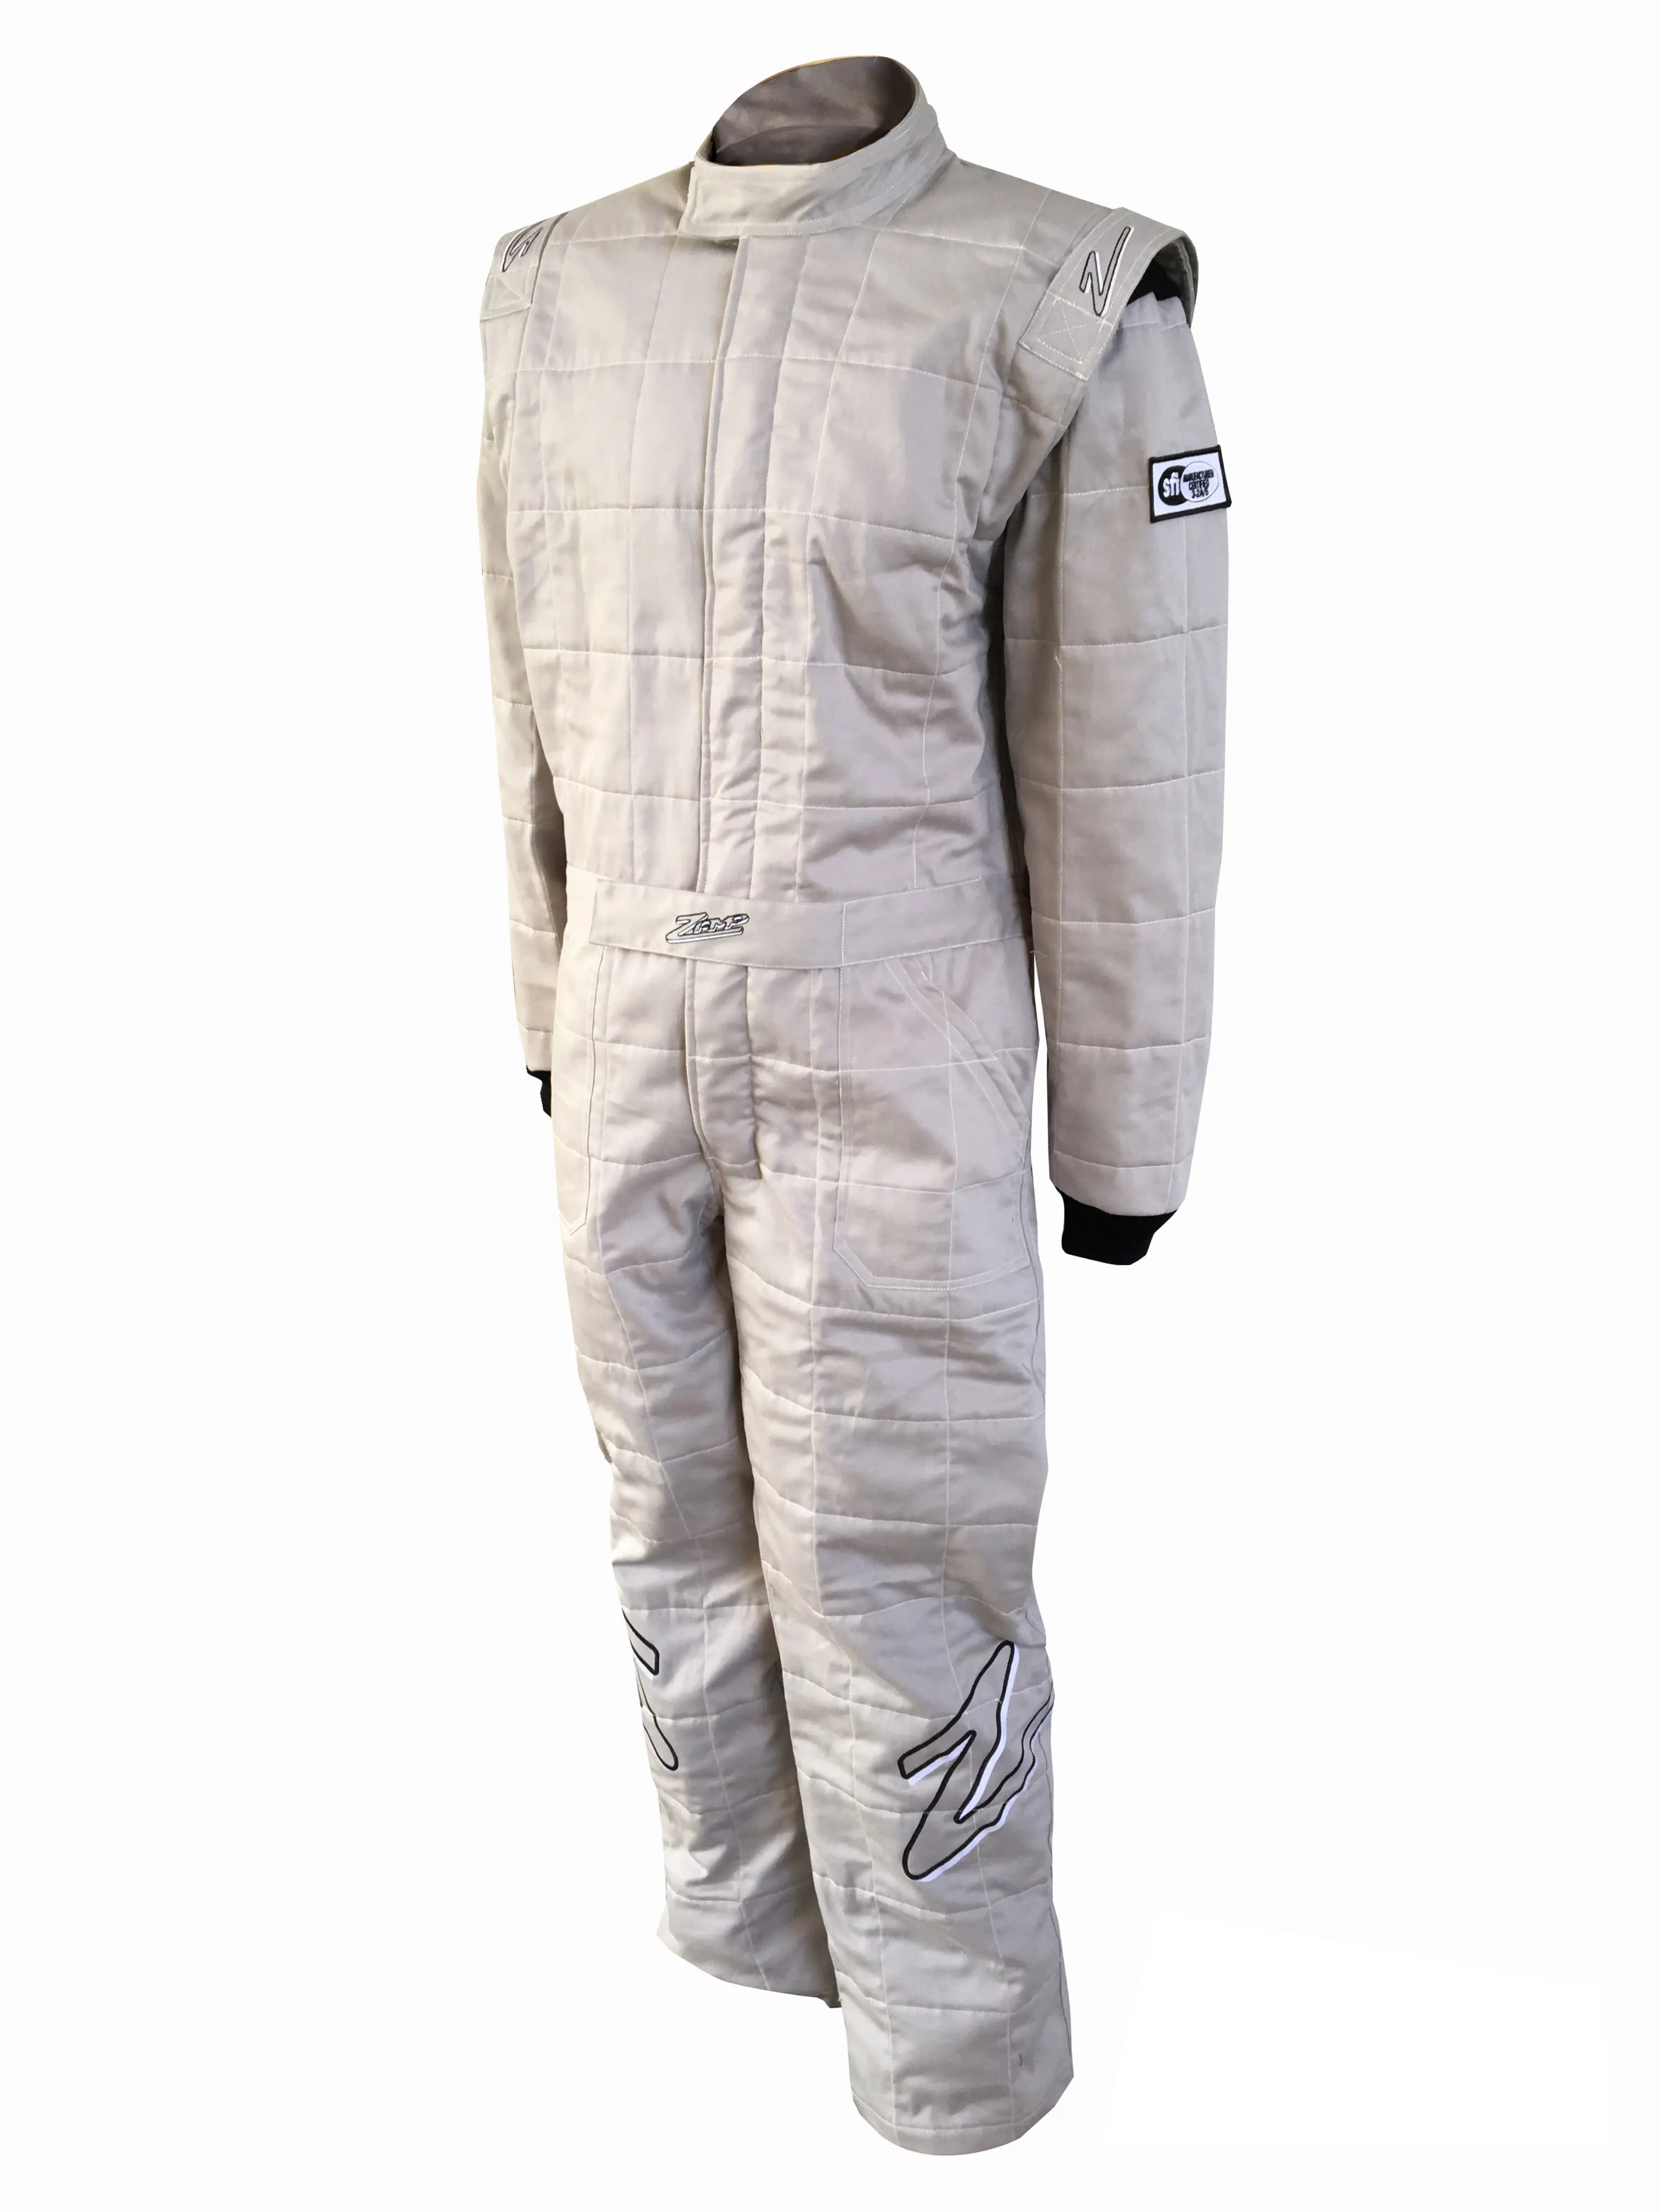 ZR-30 Racing Suit